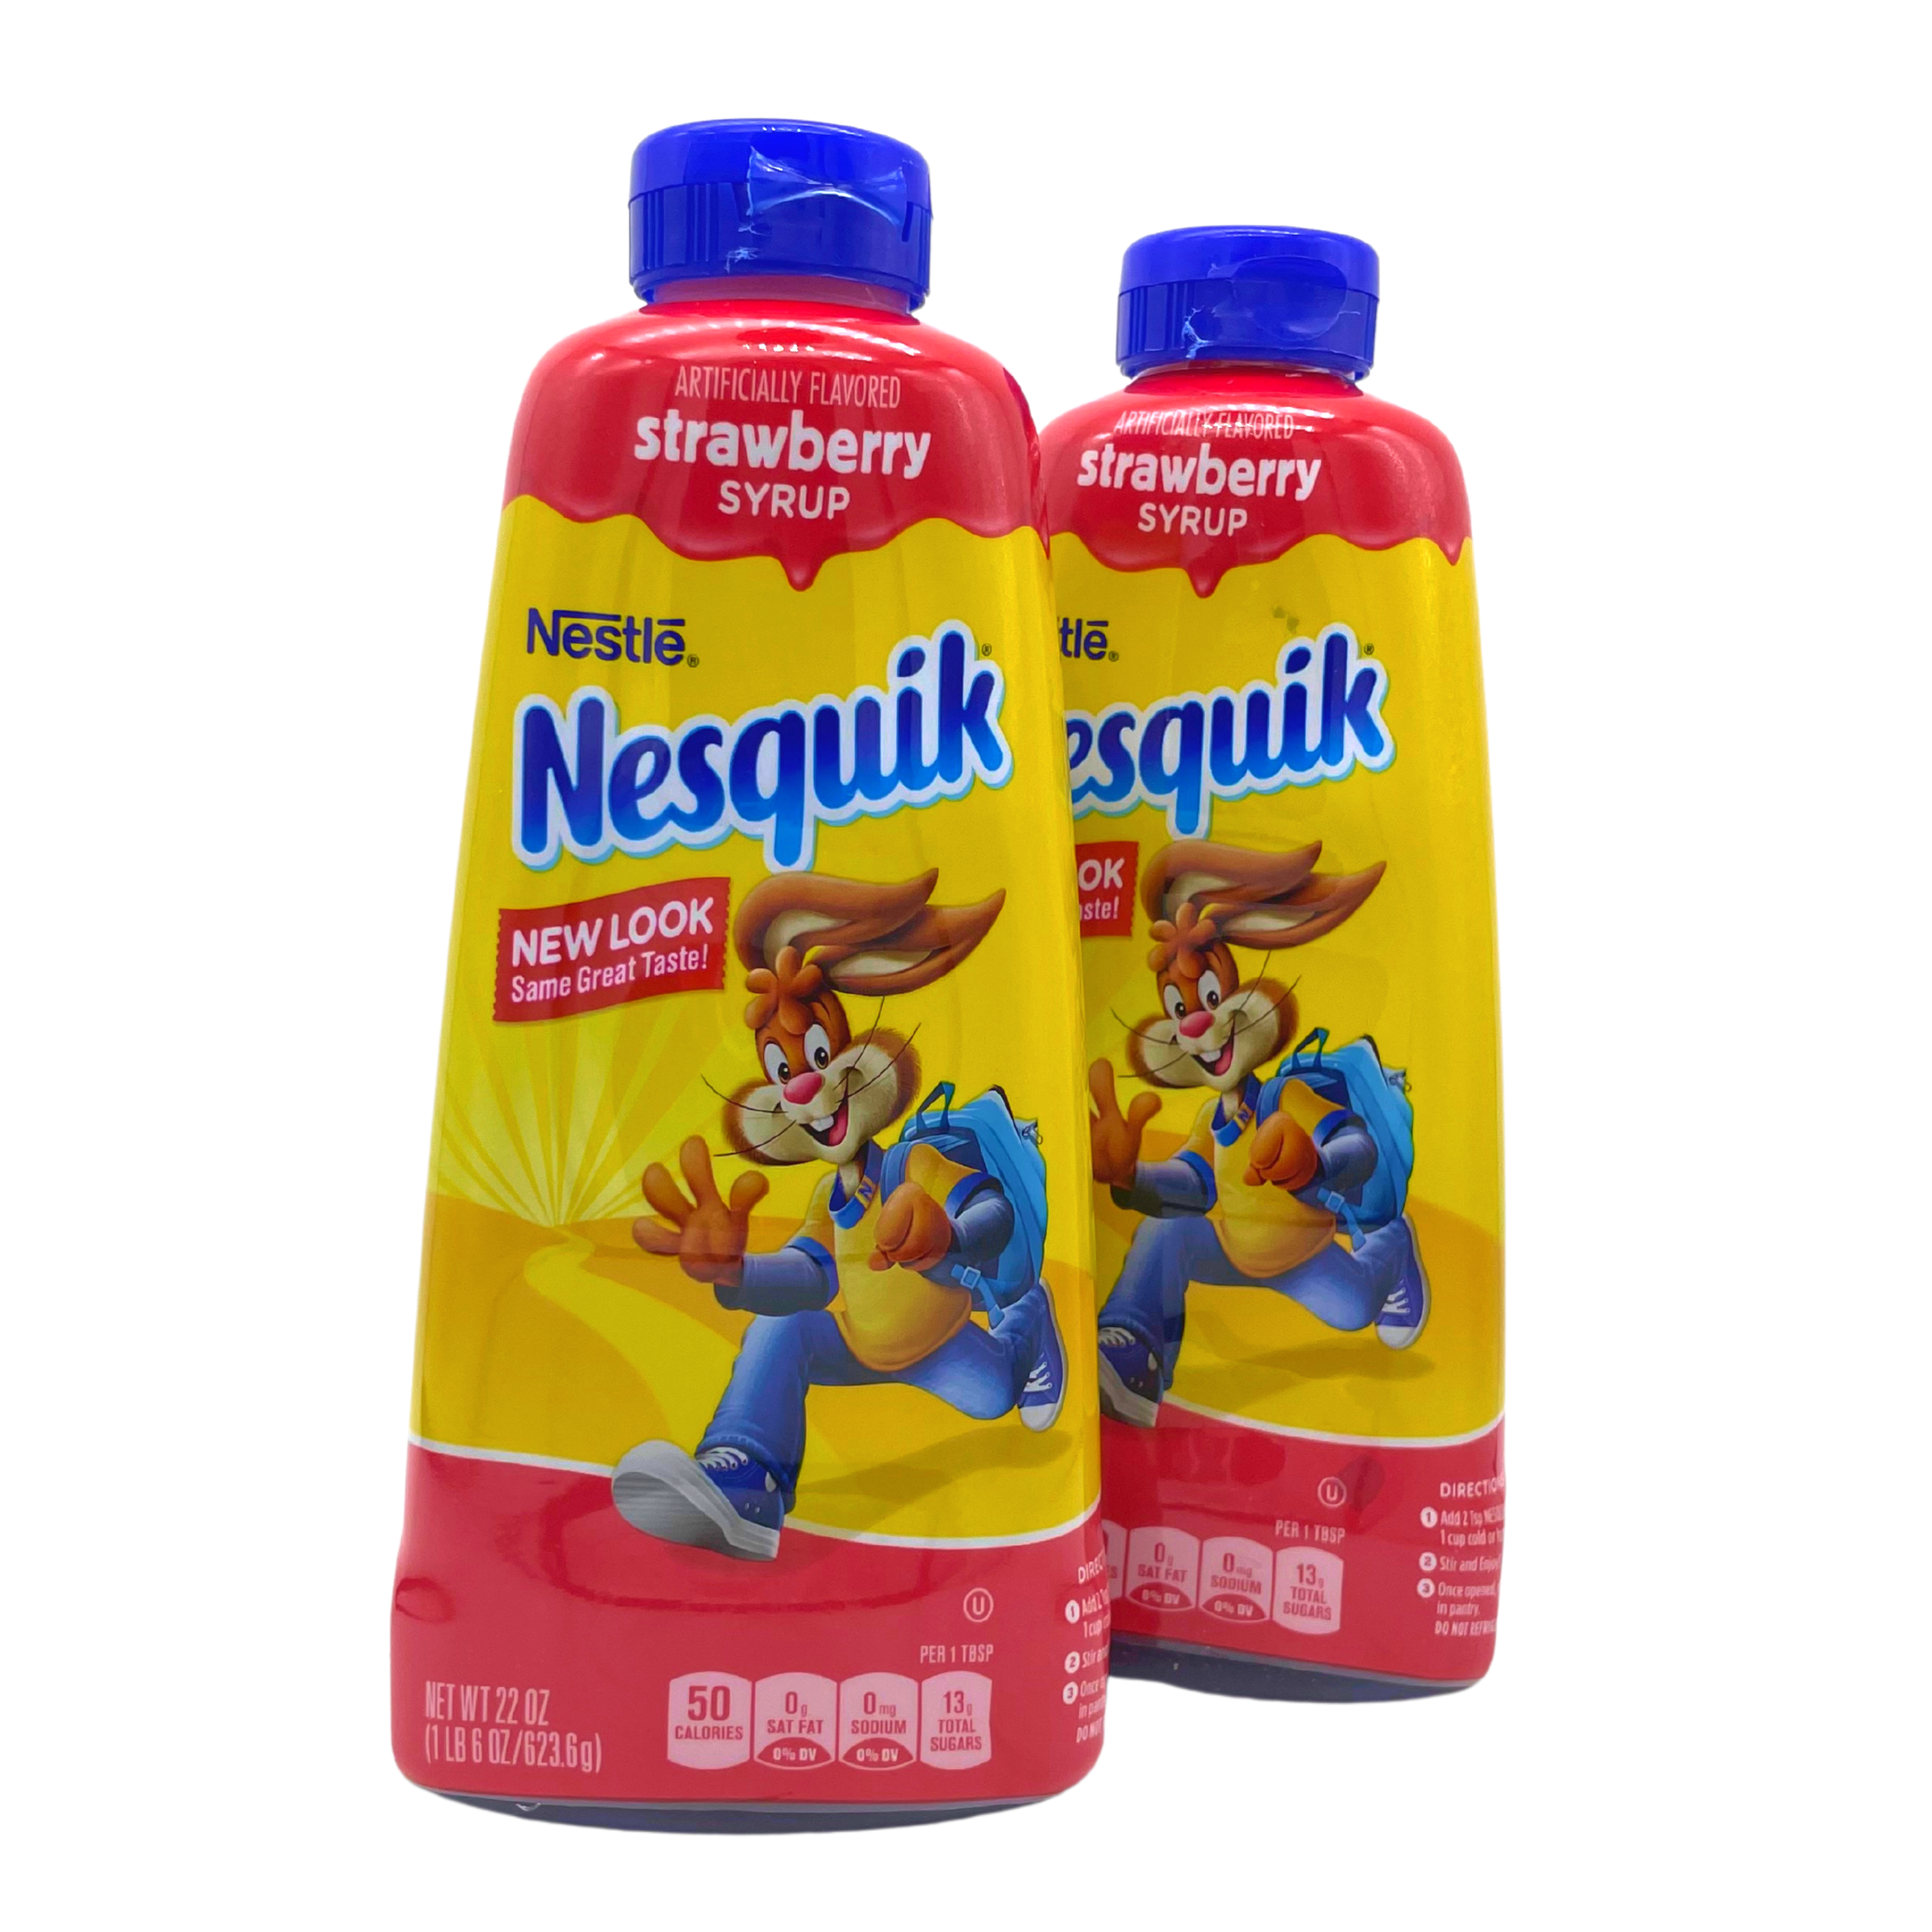 Nesquik - Strawberry Syrup / Sciroppo alla Fragola 623g – Acquista Online  al Miglior Prezzo - Fit or Fat Market